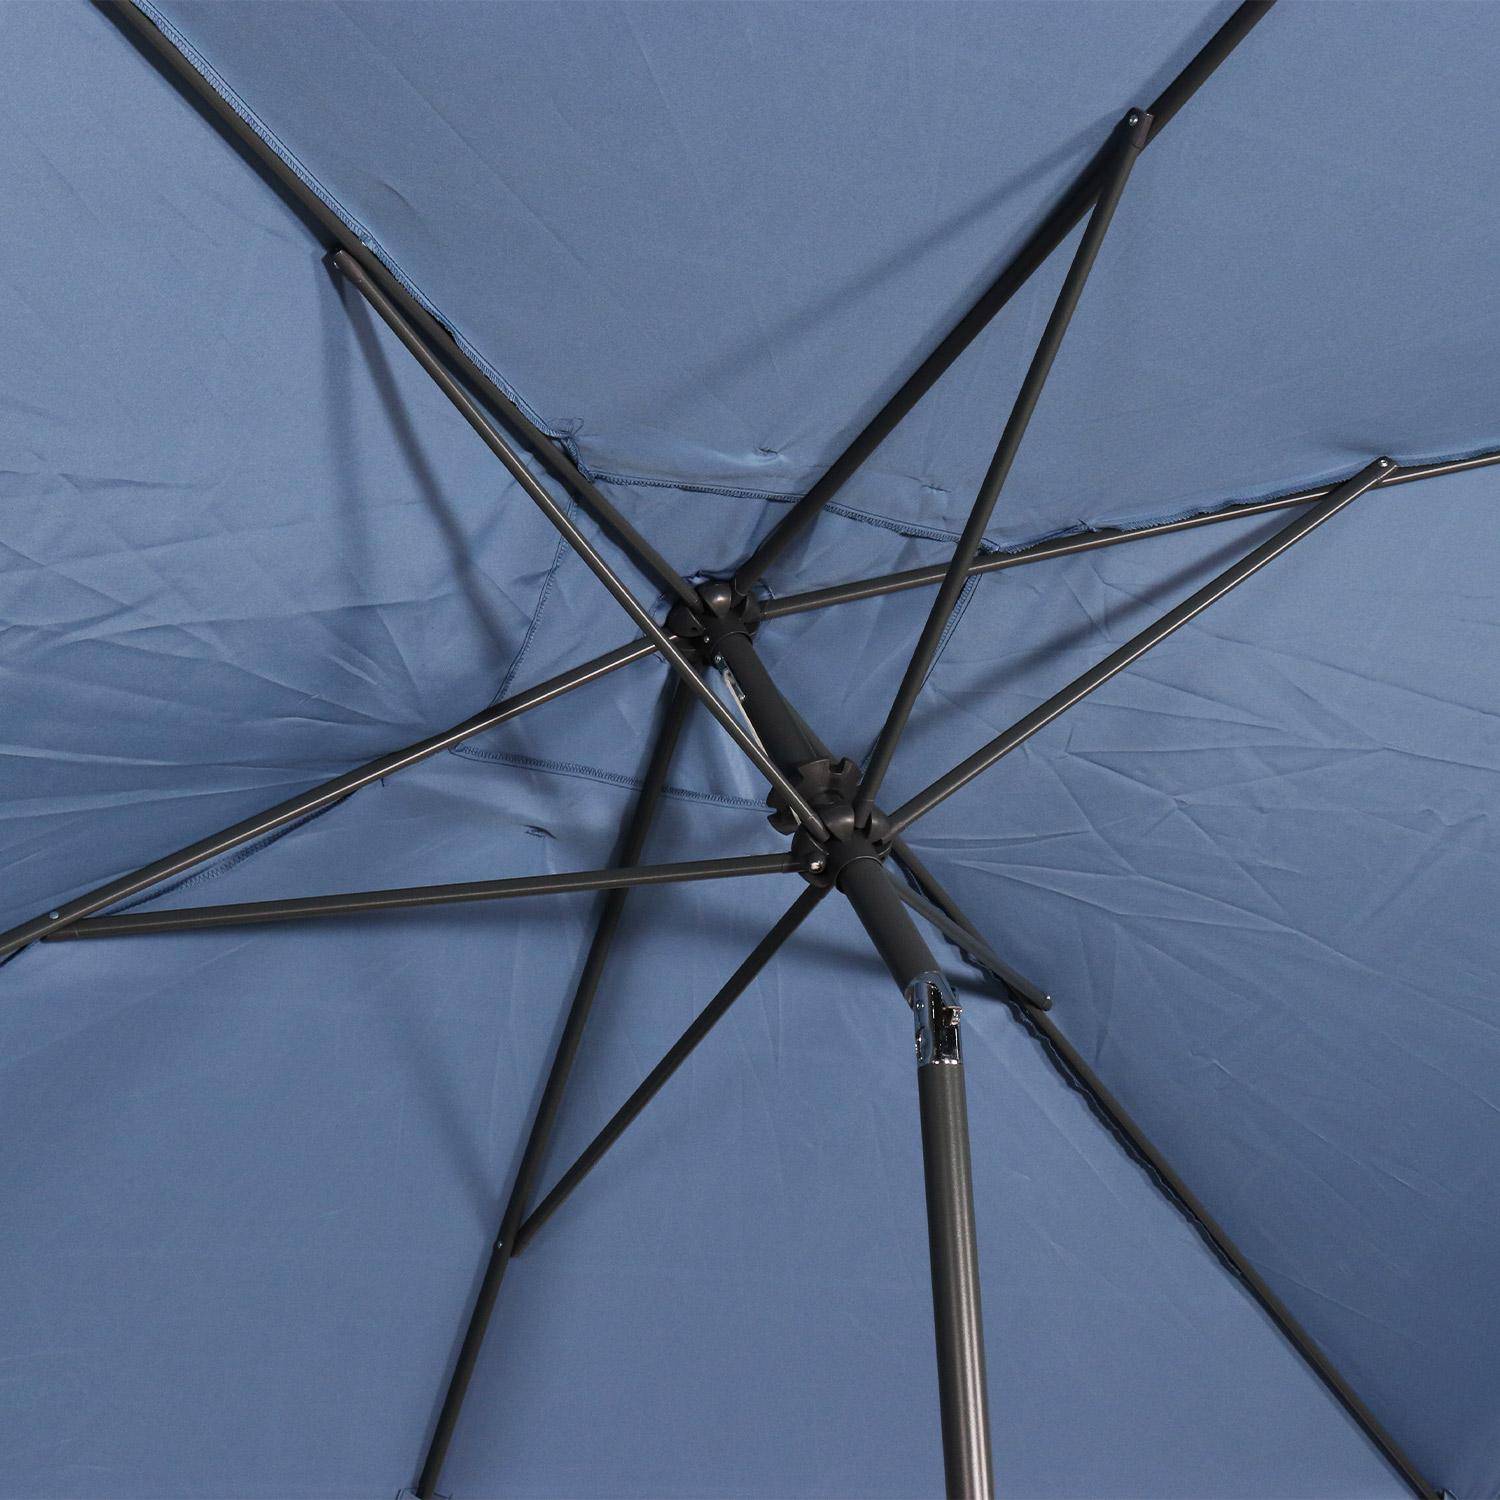 Parasol droit rectangulaire 2x3m - Touquet bleu grisé - mât central en aluminium orientable et manivelle d'ouverture,sweeek,Photo6